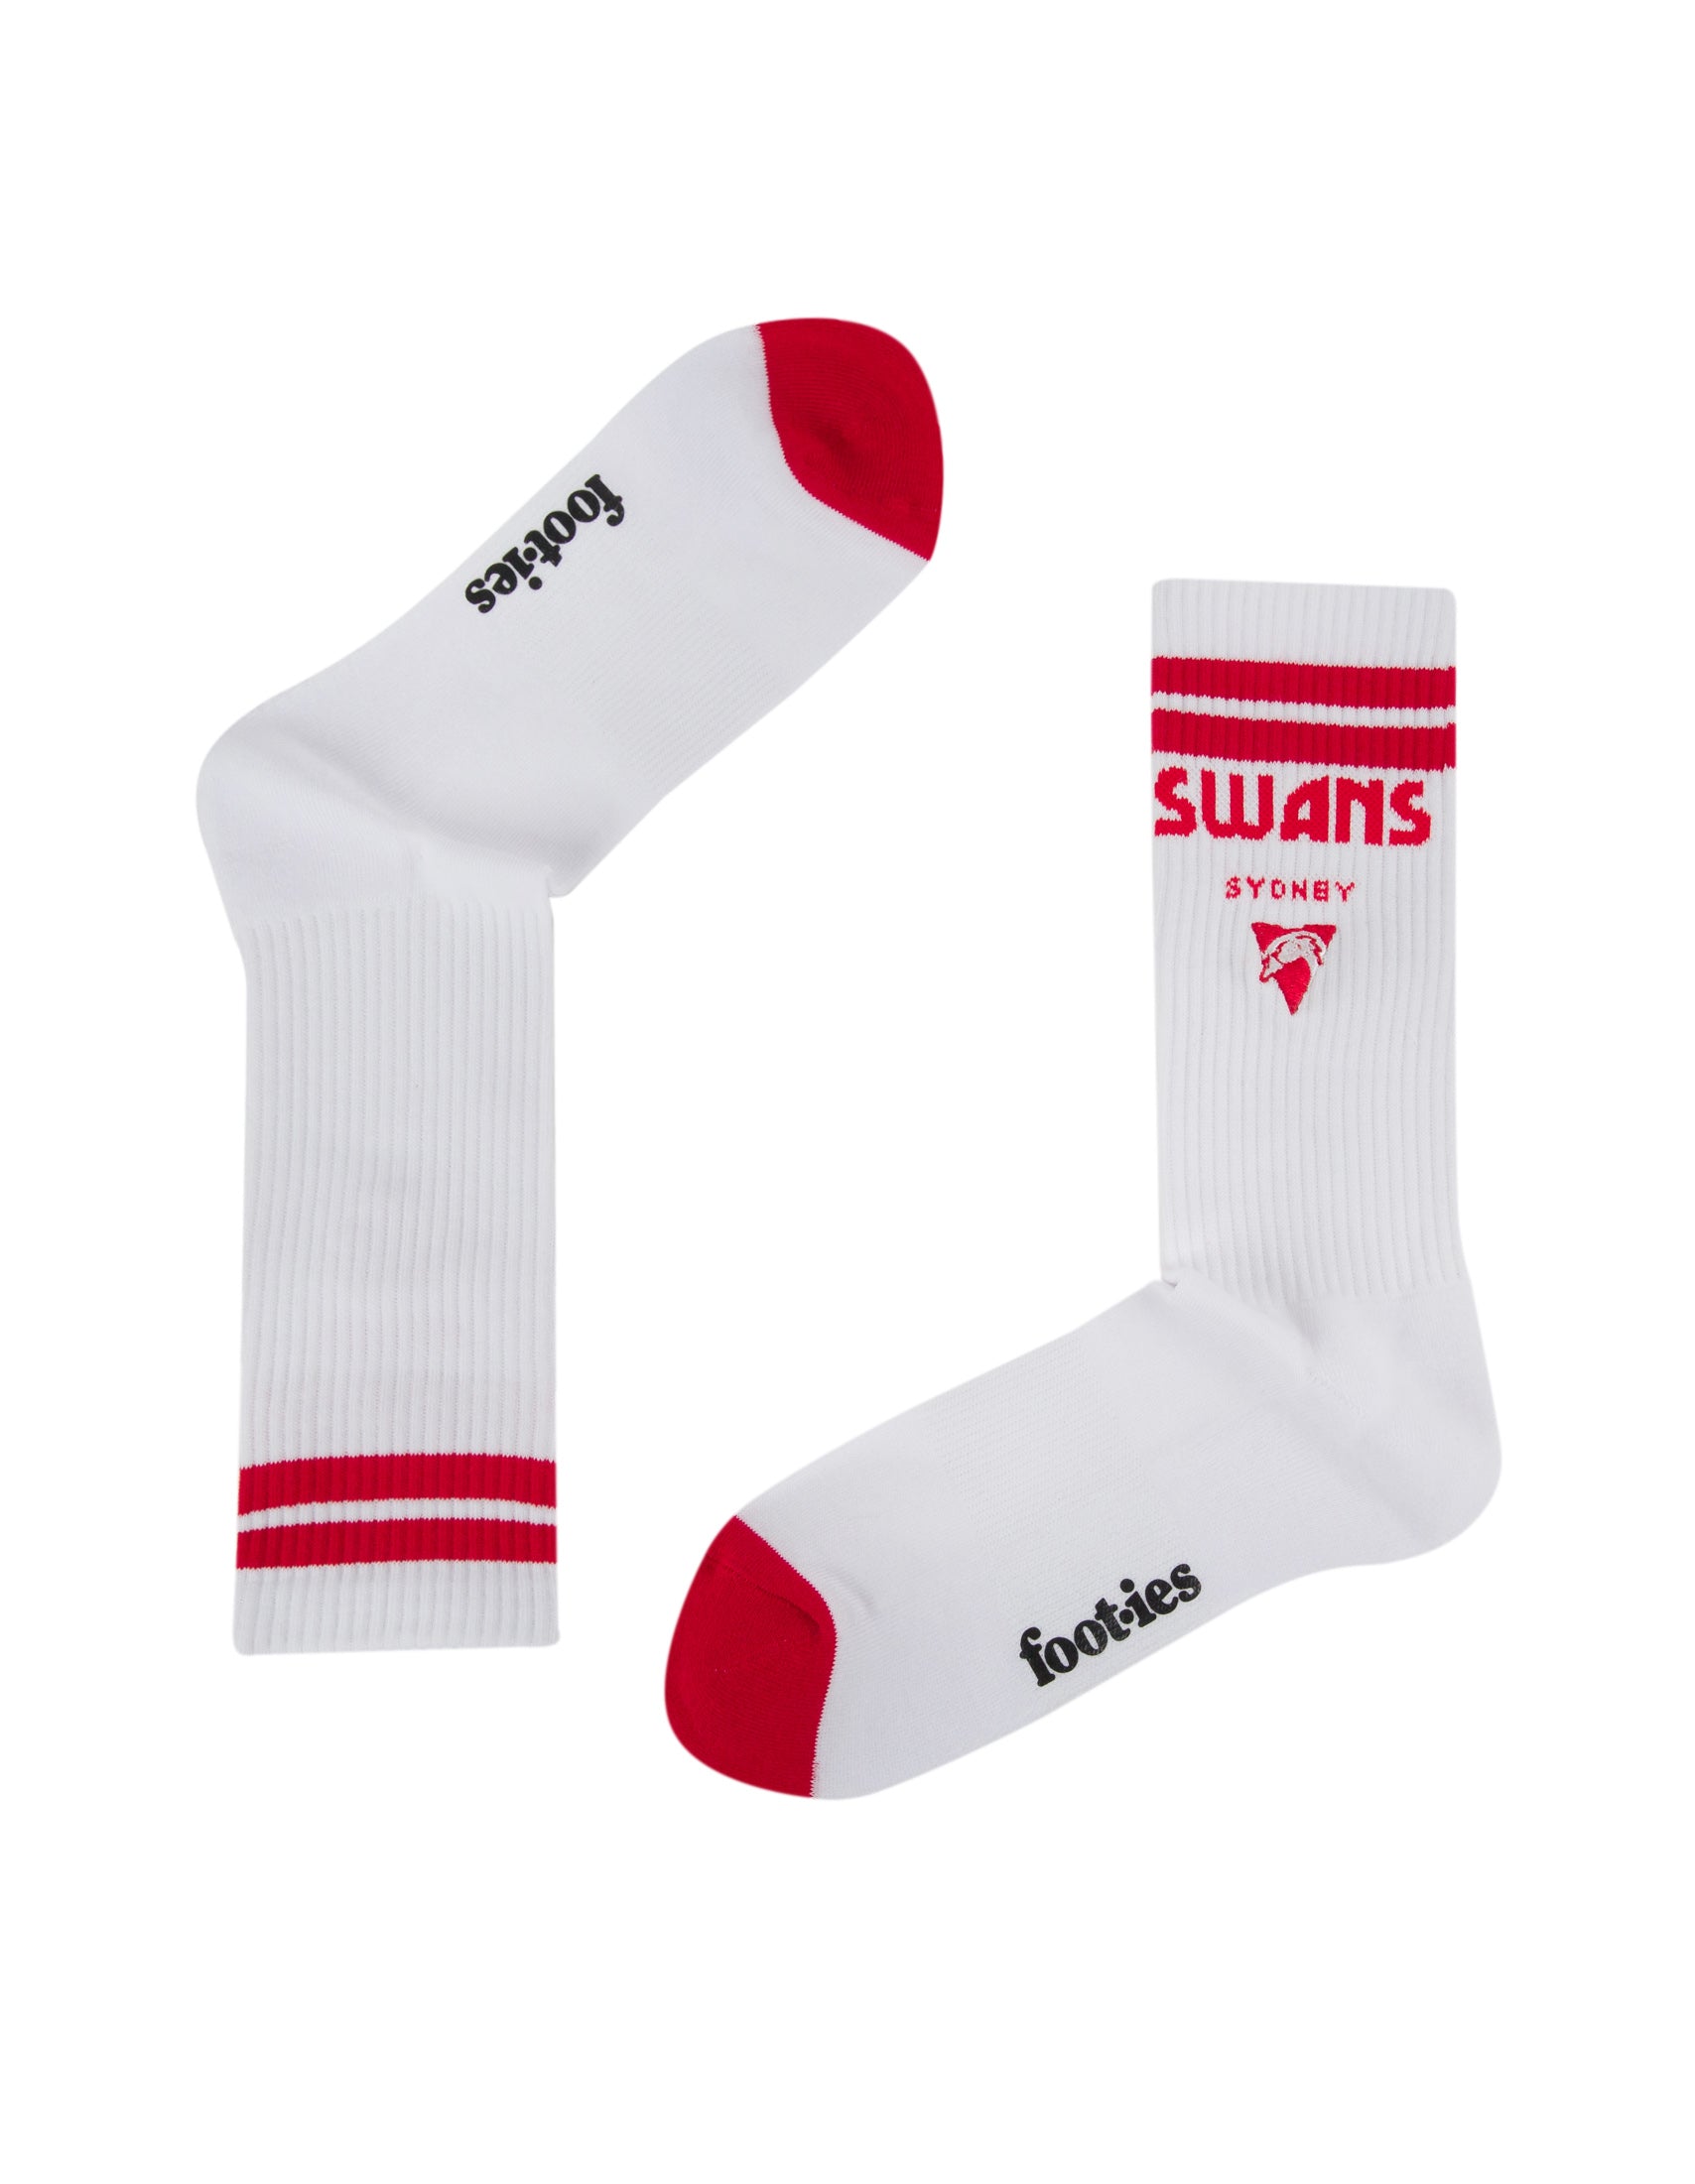 Sydney Swans Mascot Sneaker 2 Pack Socks